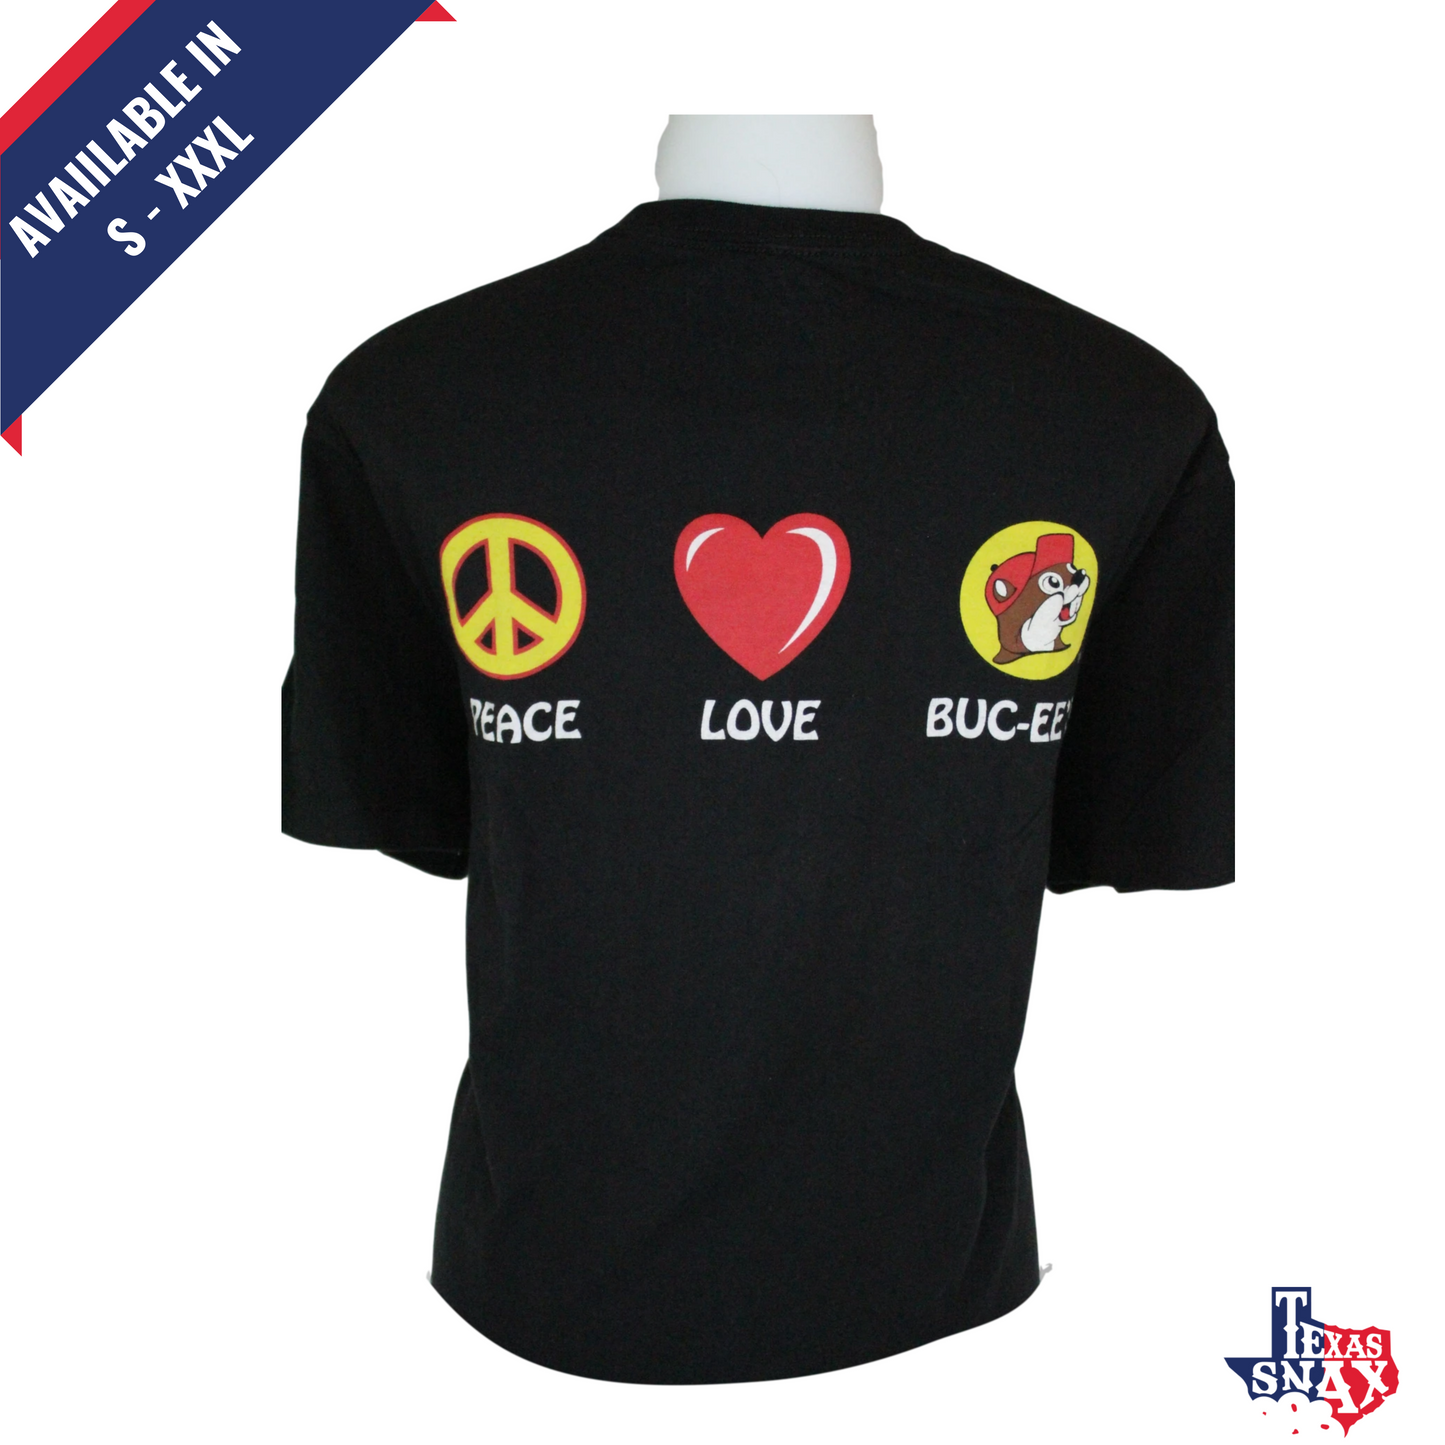 Youth Buc-ee's "Peace, Love, Buc-ee's Shirt"